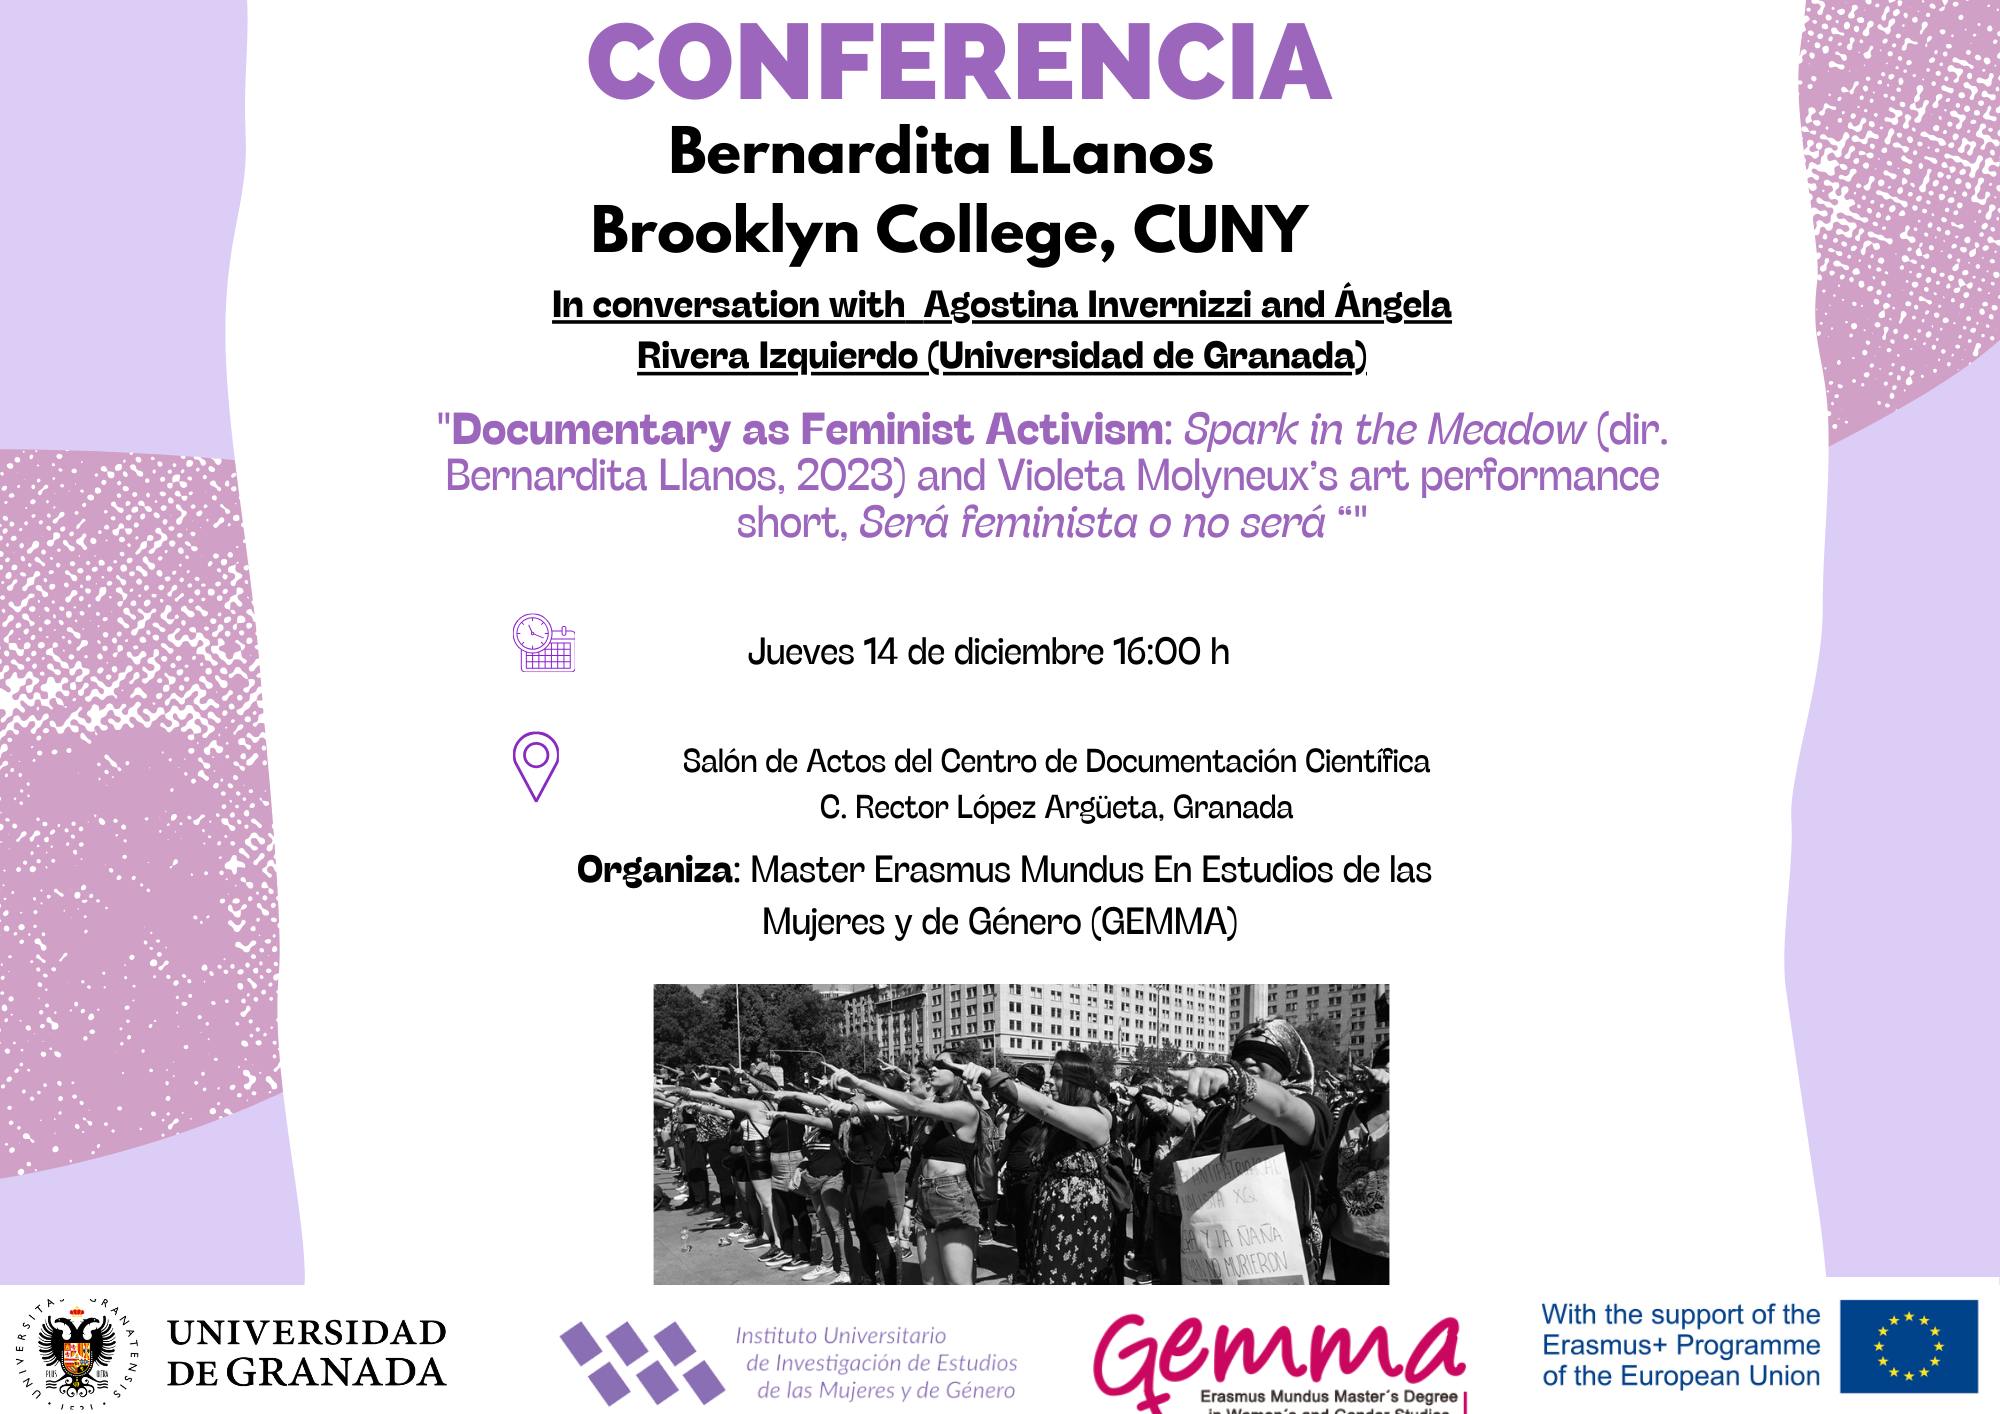 Poster of Bernardita Llanos' conference